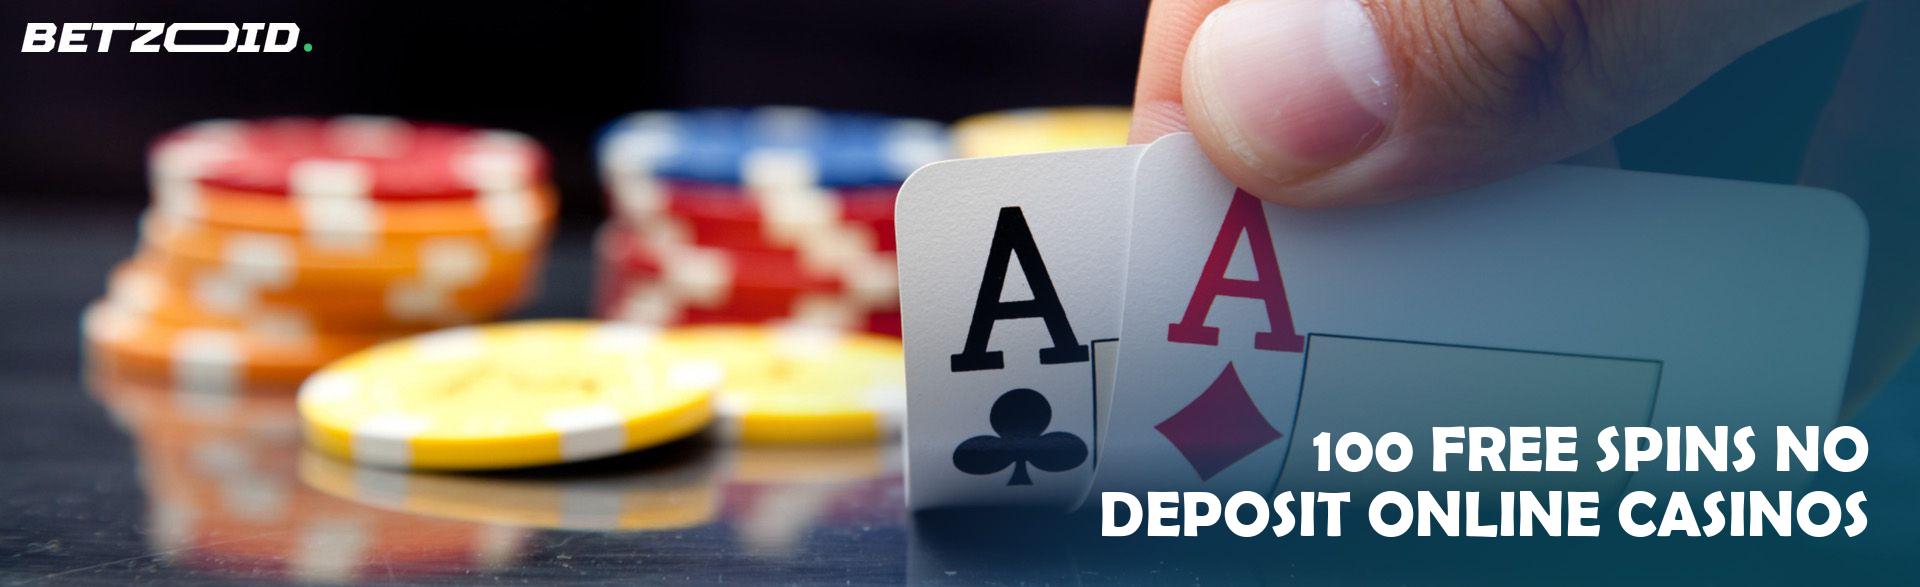 100 Free Spins No Deposit Online Casinos.